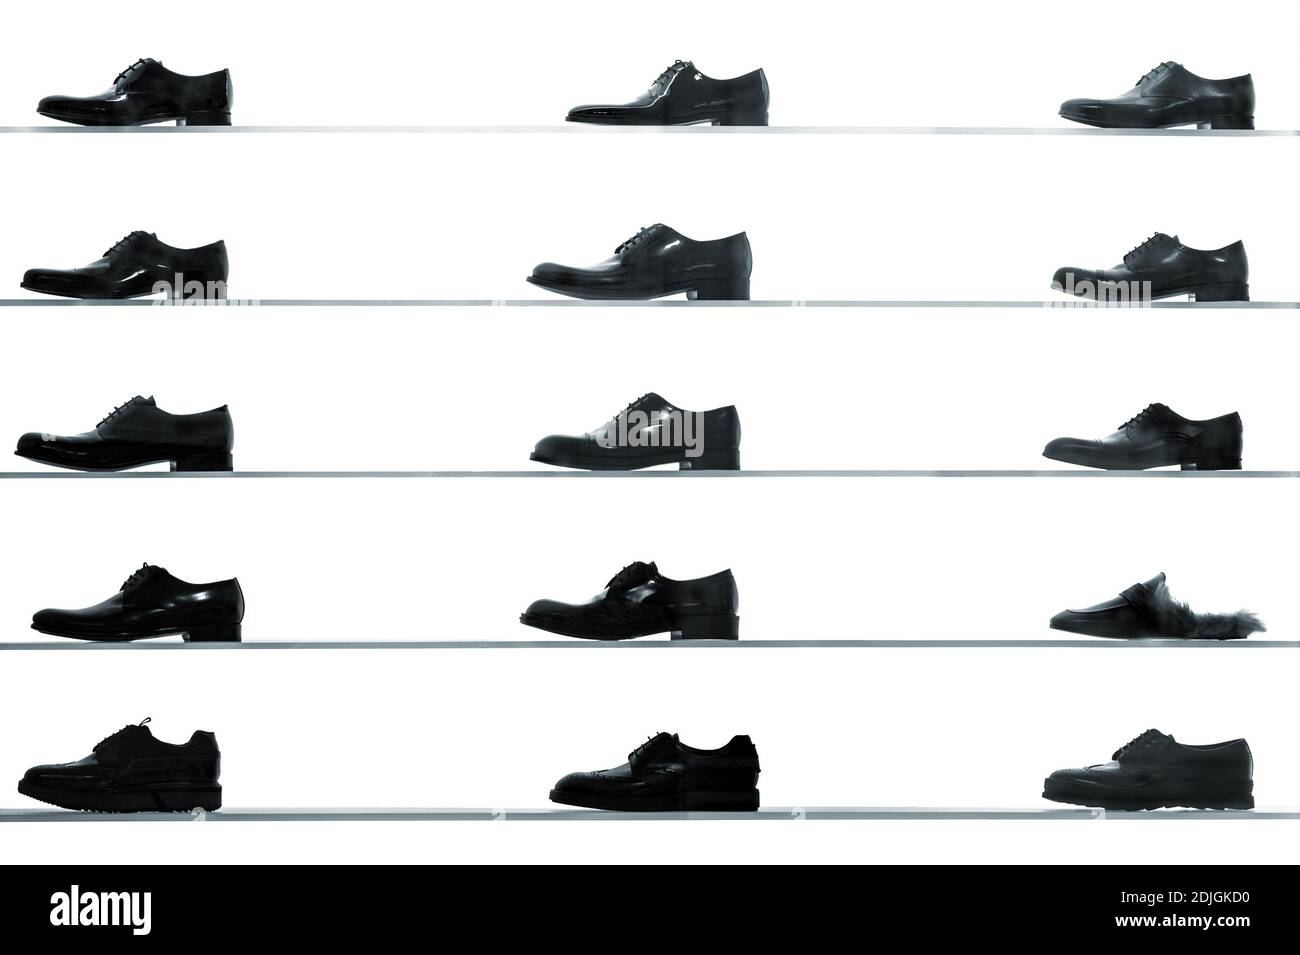 Chaussures homme classic affichée sur étagères des magasins contre fond blanc rétro-éclairé. Noir et blanc à contraste élevé résumé à la photo Banque D'Images